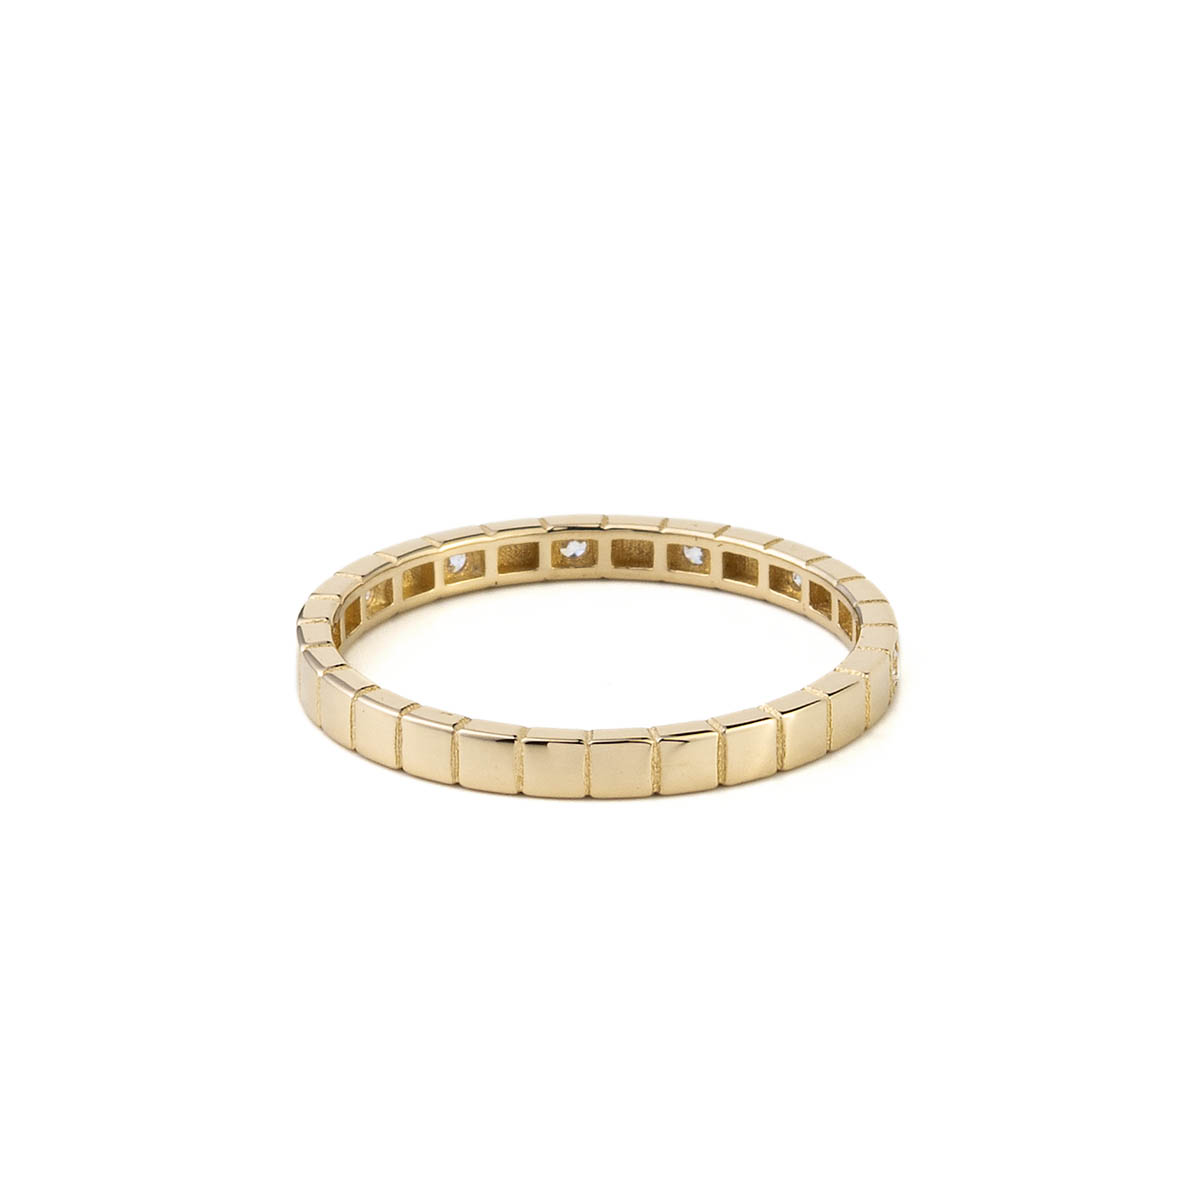 Δαχτυλίδι Βεράκι με Ζιργκόν – 14Κ Χρυσό